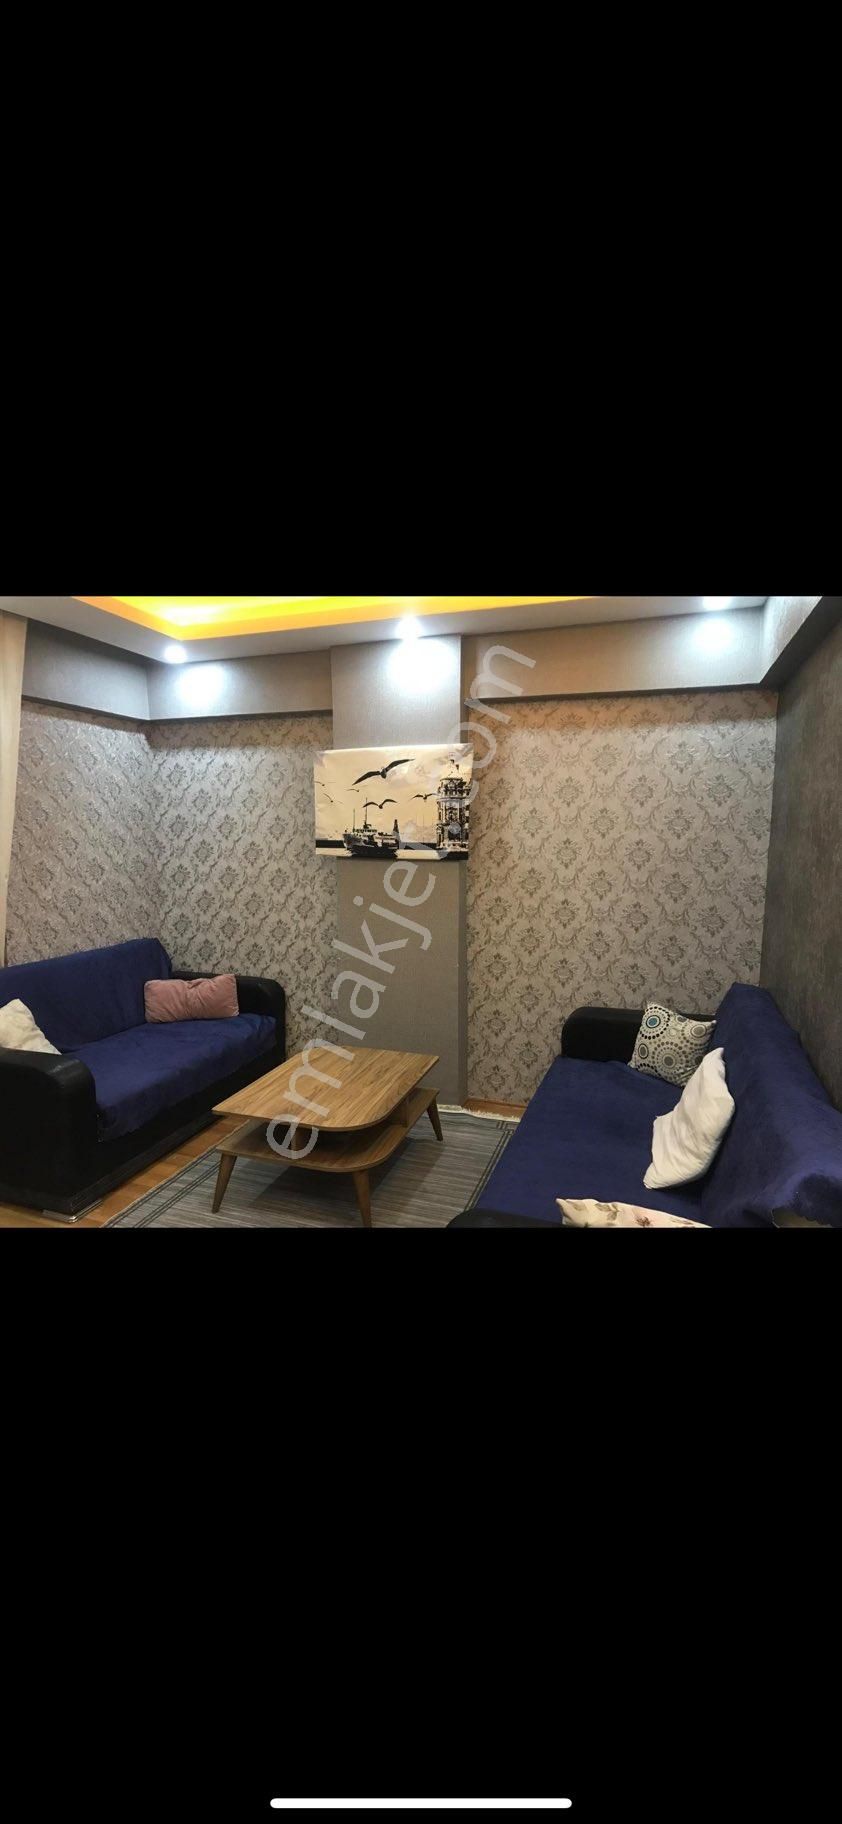 Şahinbey Yeditepe Kiralık Residence Yeditepede kiralık lüx eşyalı 1+1 asansörlü dogalgazlık kiralık eşyalı daire